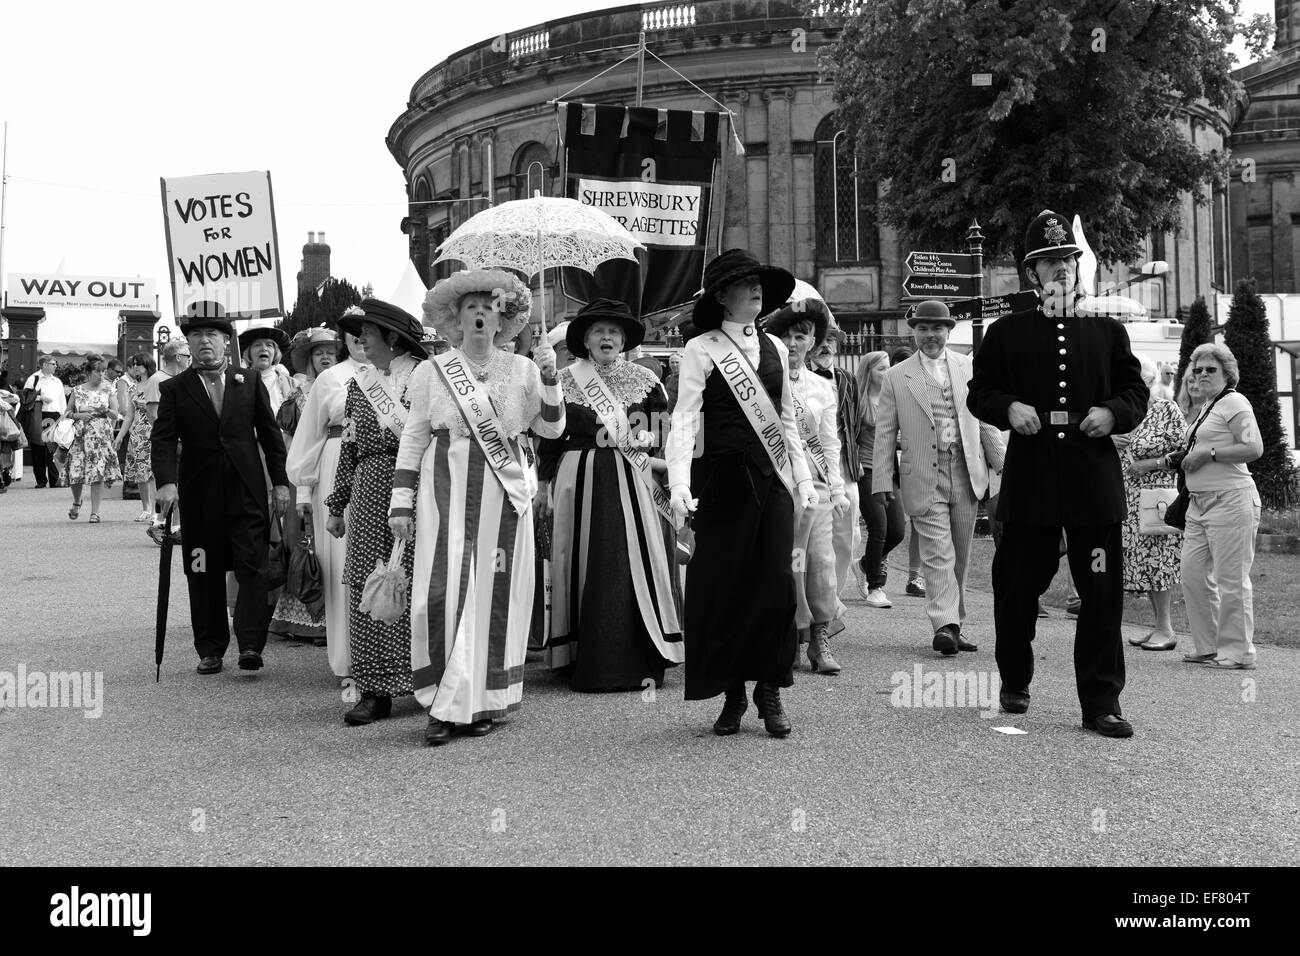 Suffragette suffragettes rievocazione storica marcia di protesta Shrewsbury Flower Show 2014 Foto Stock